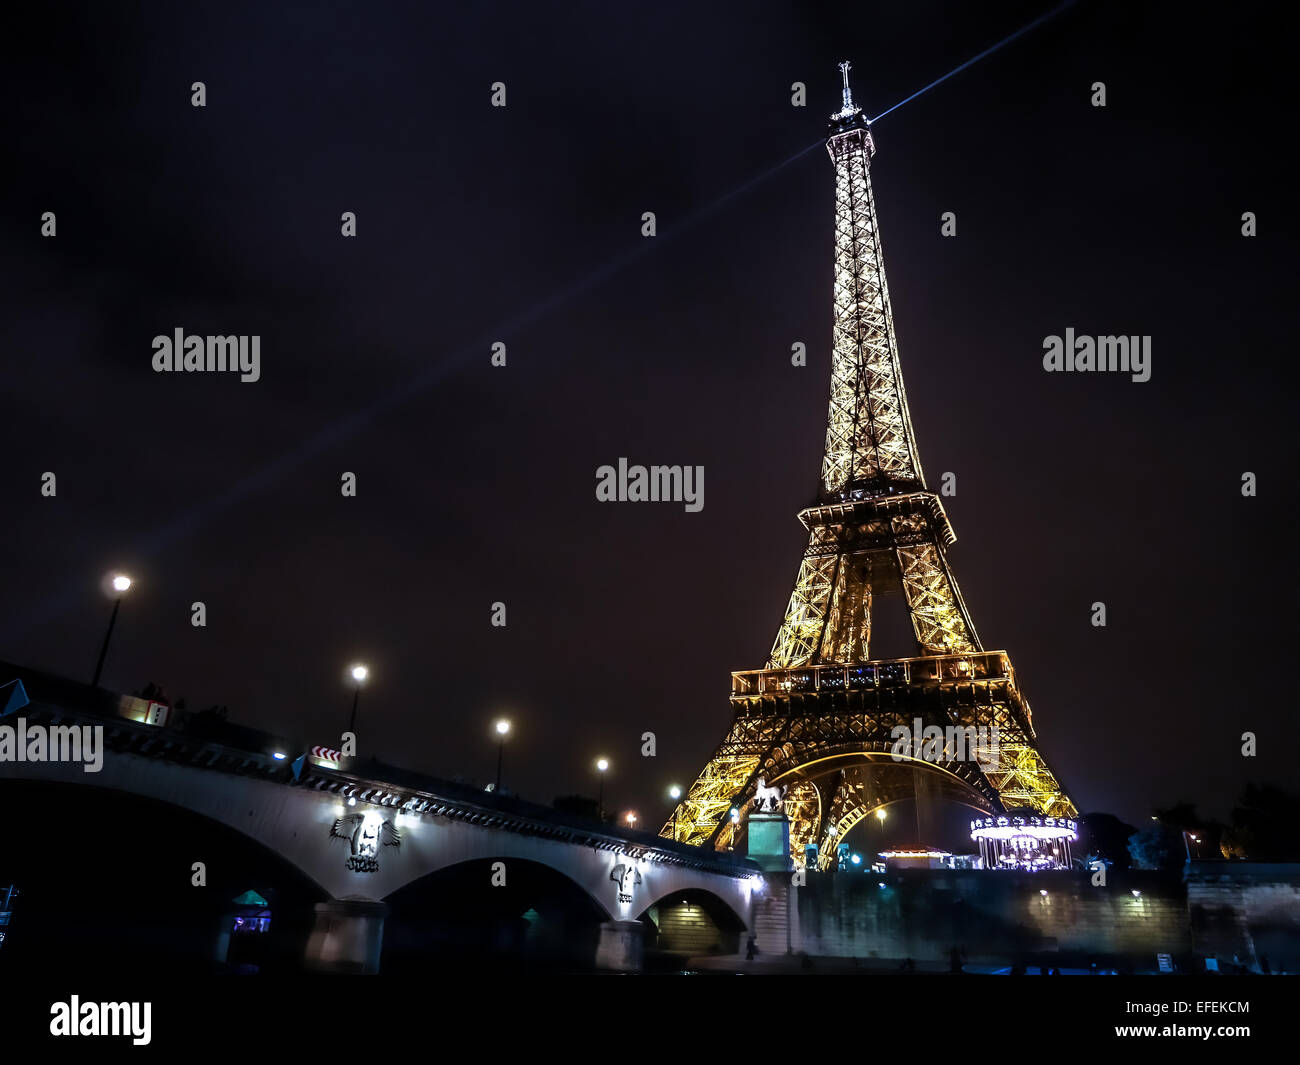 La Tour Eiffel illuminée par nuit, Paris, France Banque D'Images